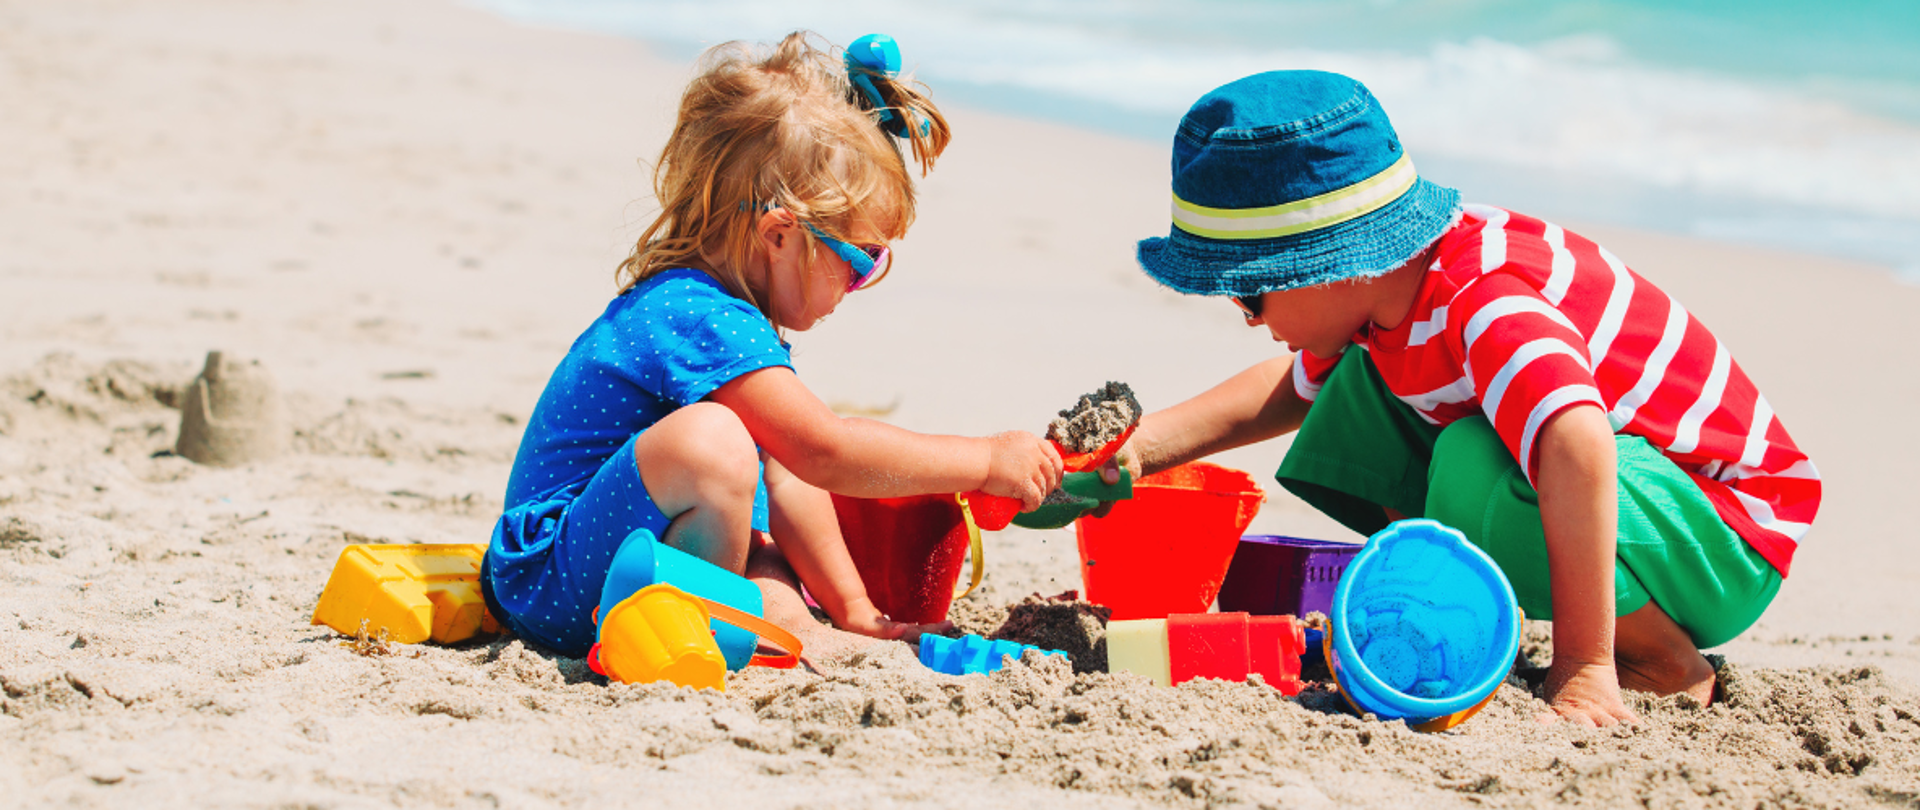 dzieci bawią się na piaszczystej plaży, z lewej mała dziewczynka sypie piasek łopatką do kolorowych foremek, po prawej starszy chłopiec w kapeluszu trzyma foremkę, na około kolorowe zabawki plażowe do piasku 